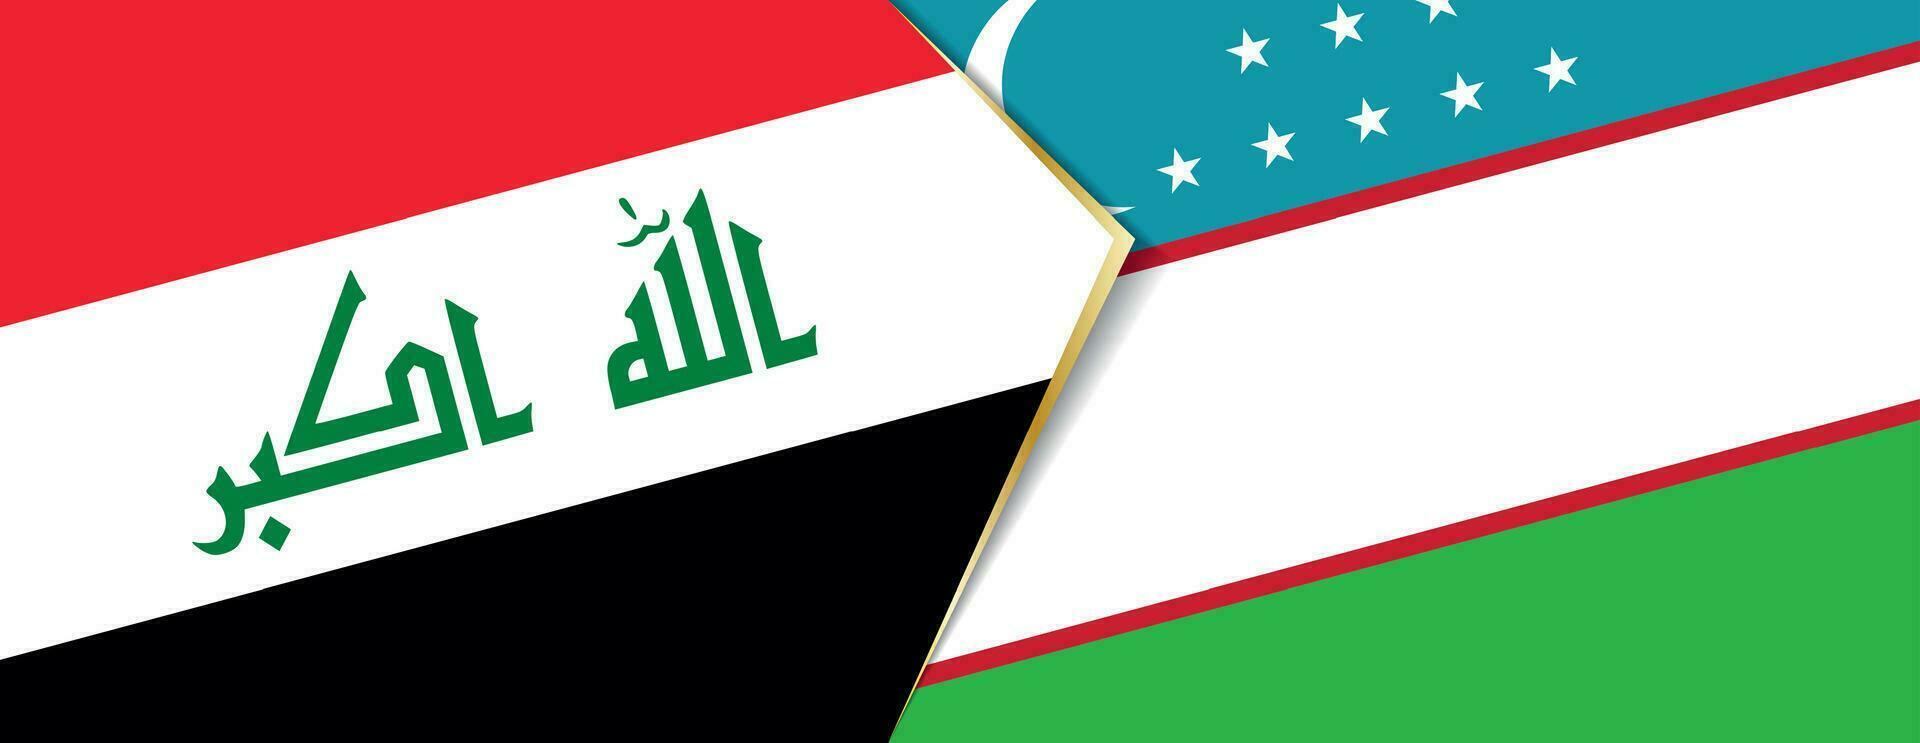 Irak y Uzbekistán banderas, dos vector banderas